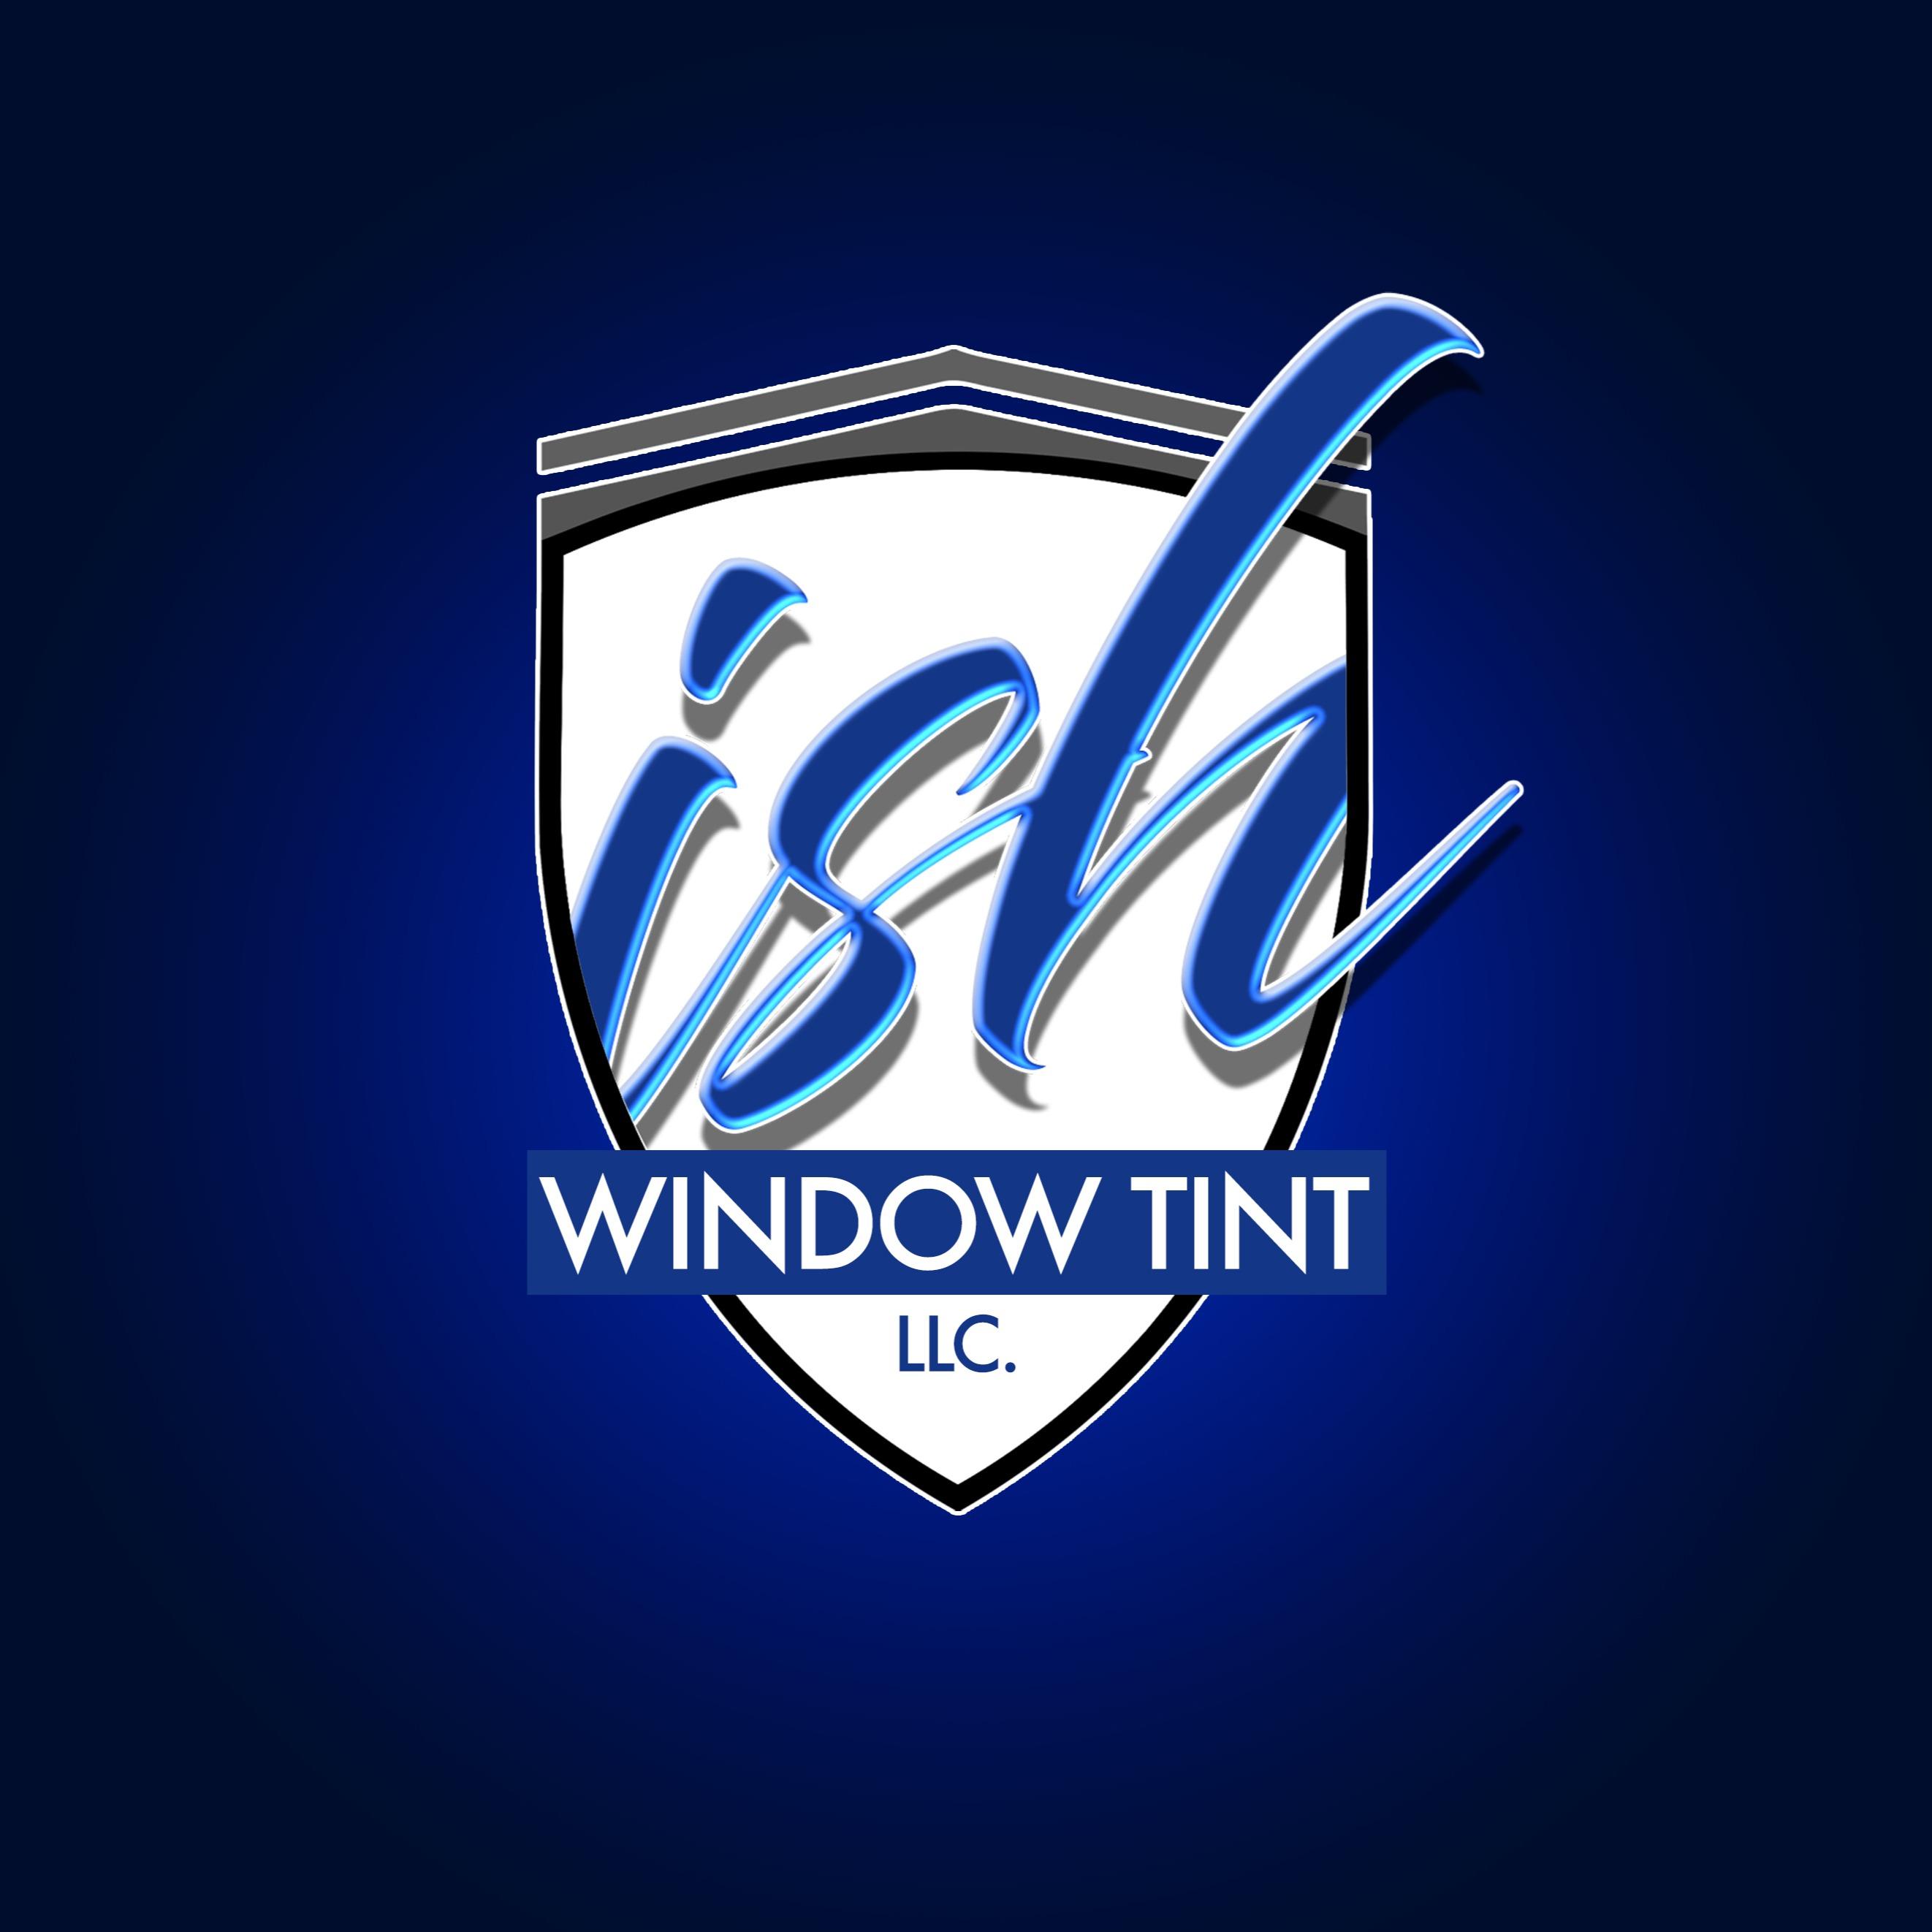 Ish Window Tint Ish Window Tint - Window Tint Services San Antonio (210)417-7152